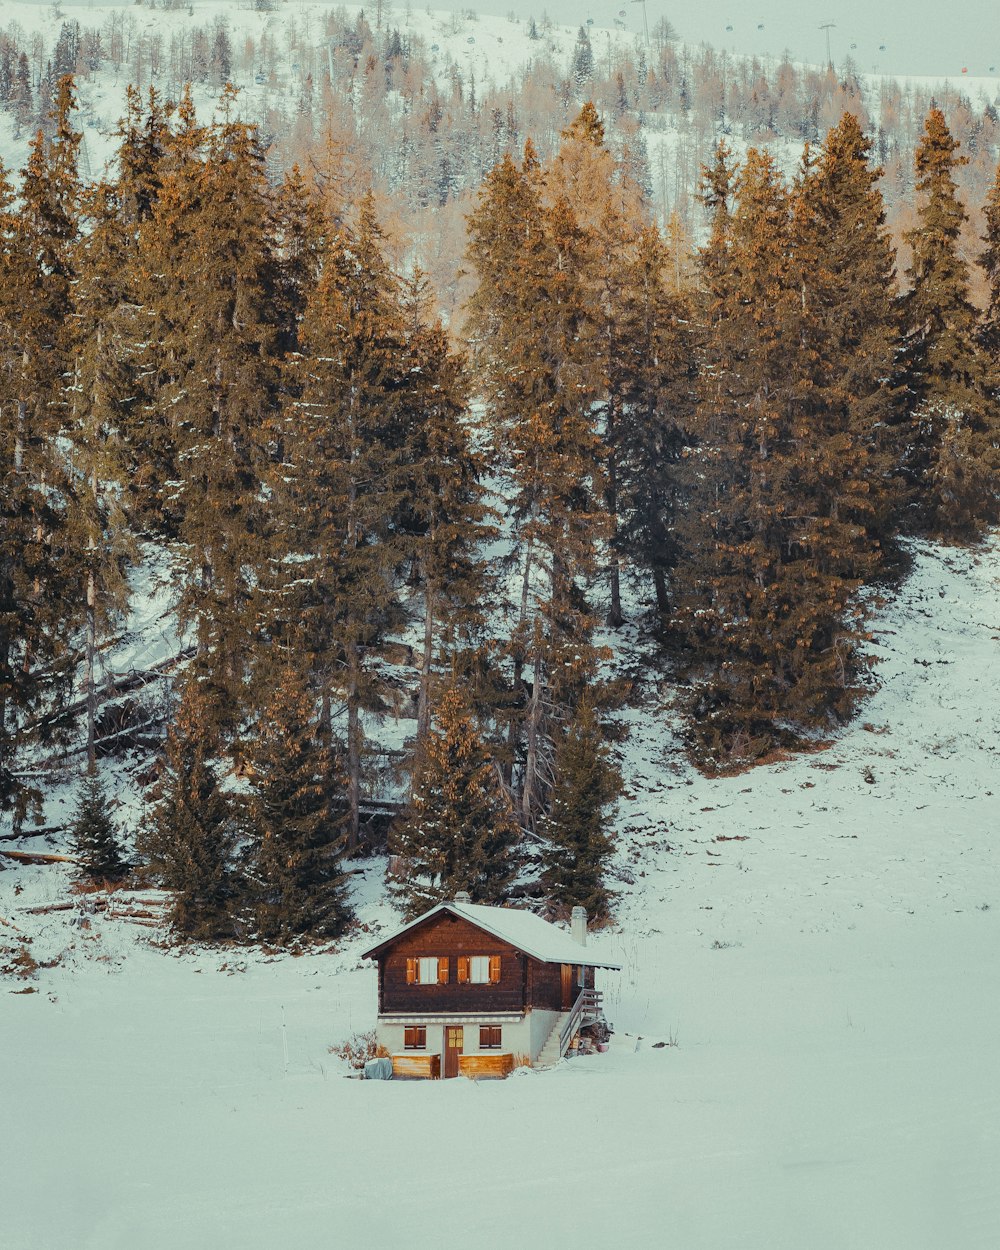 Eine Hütte mitten in einem verschneiten Wald